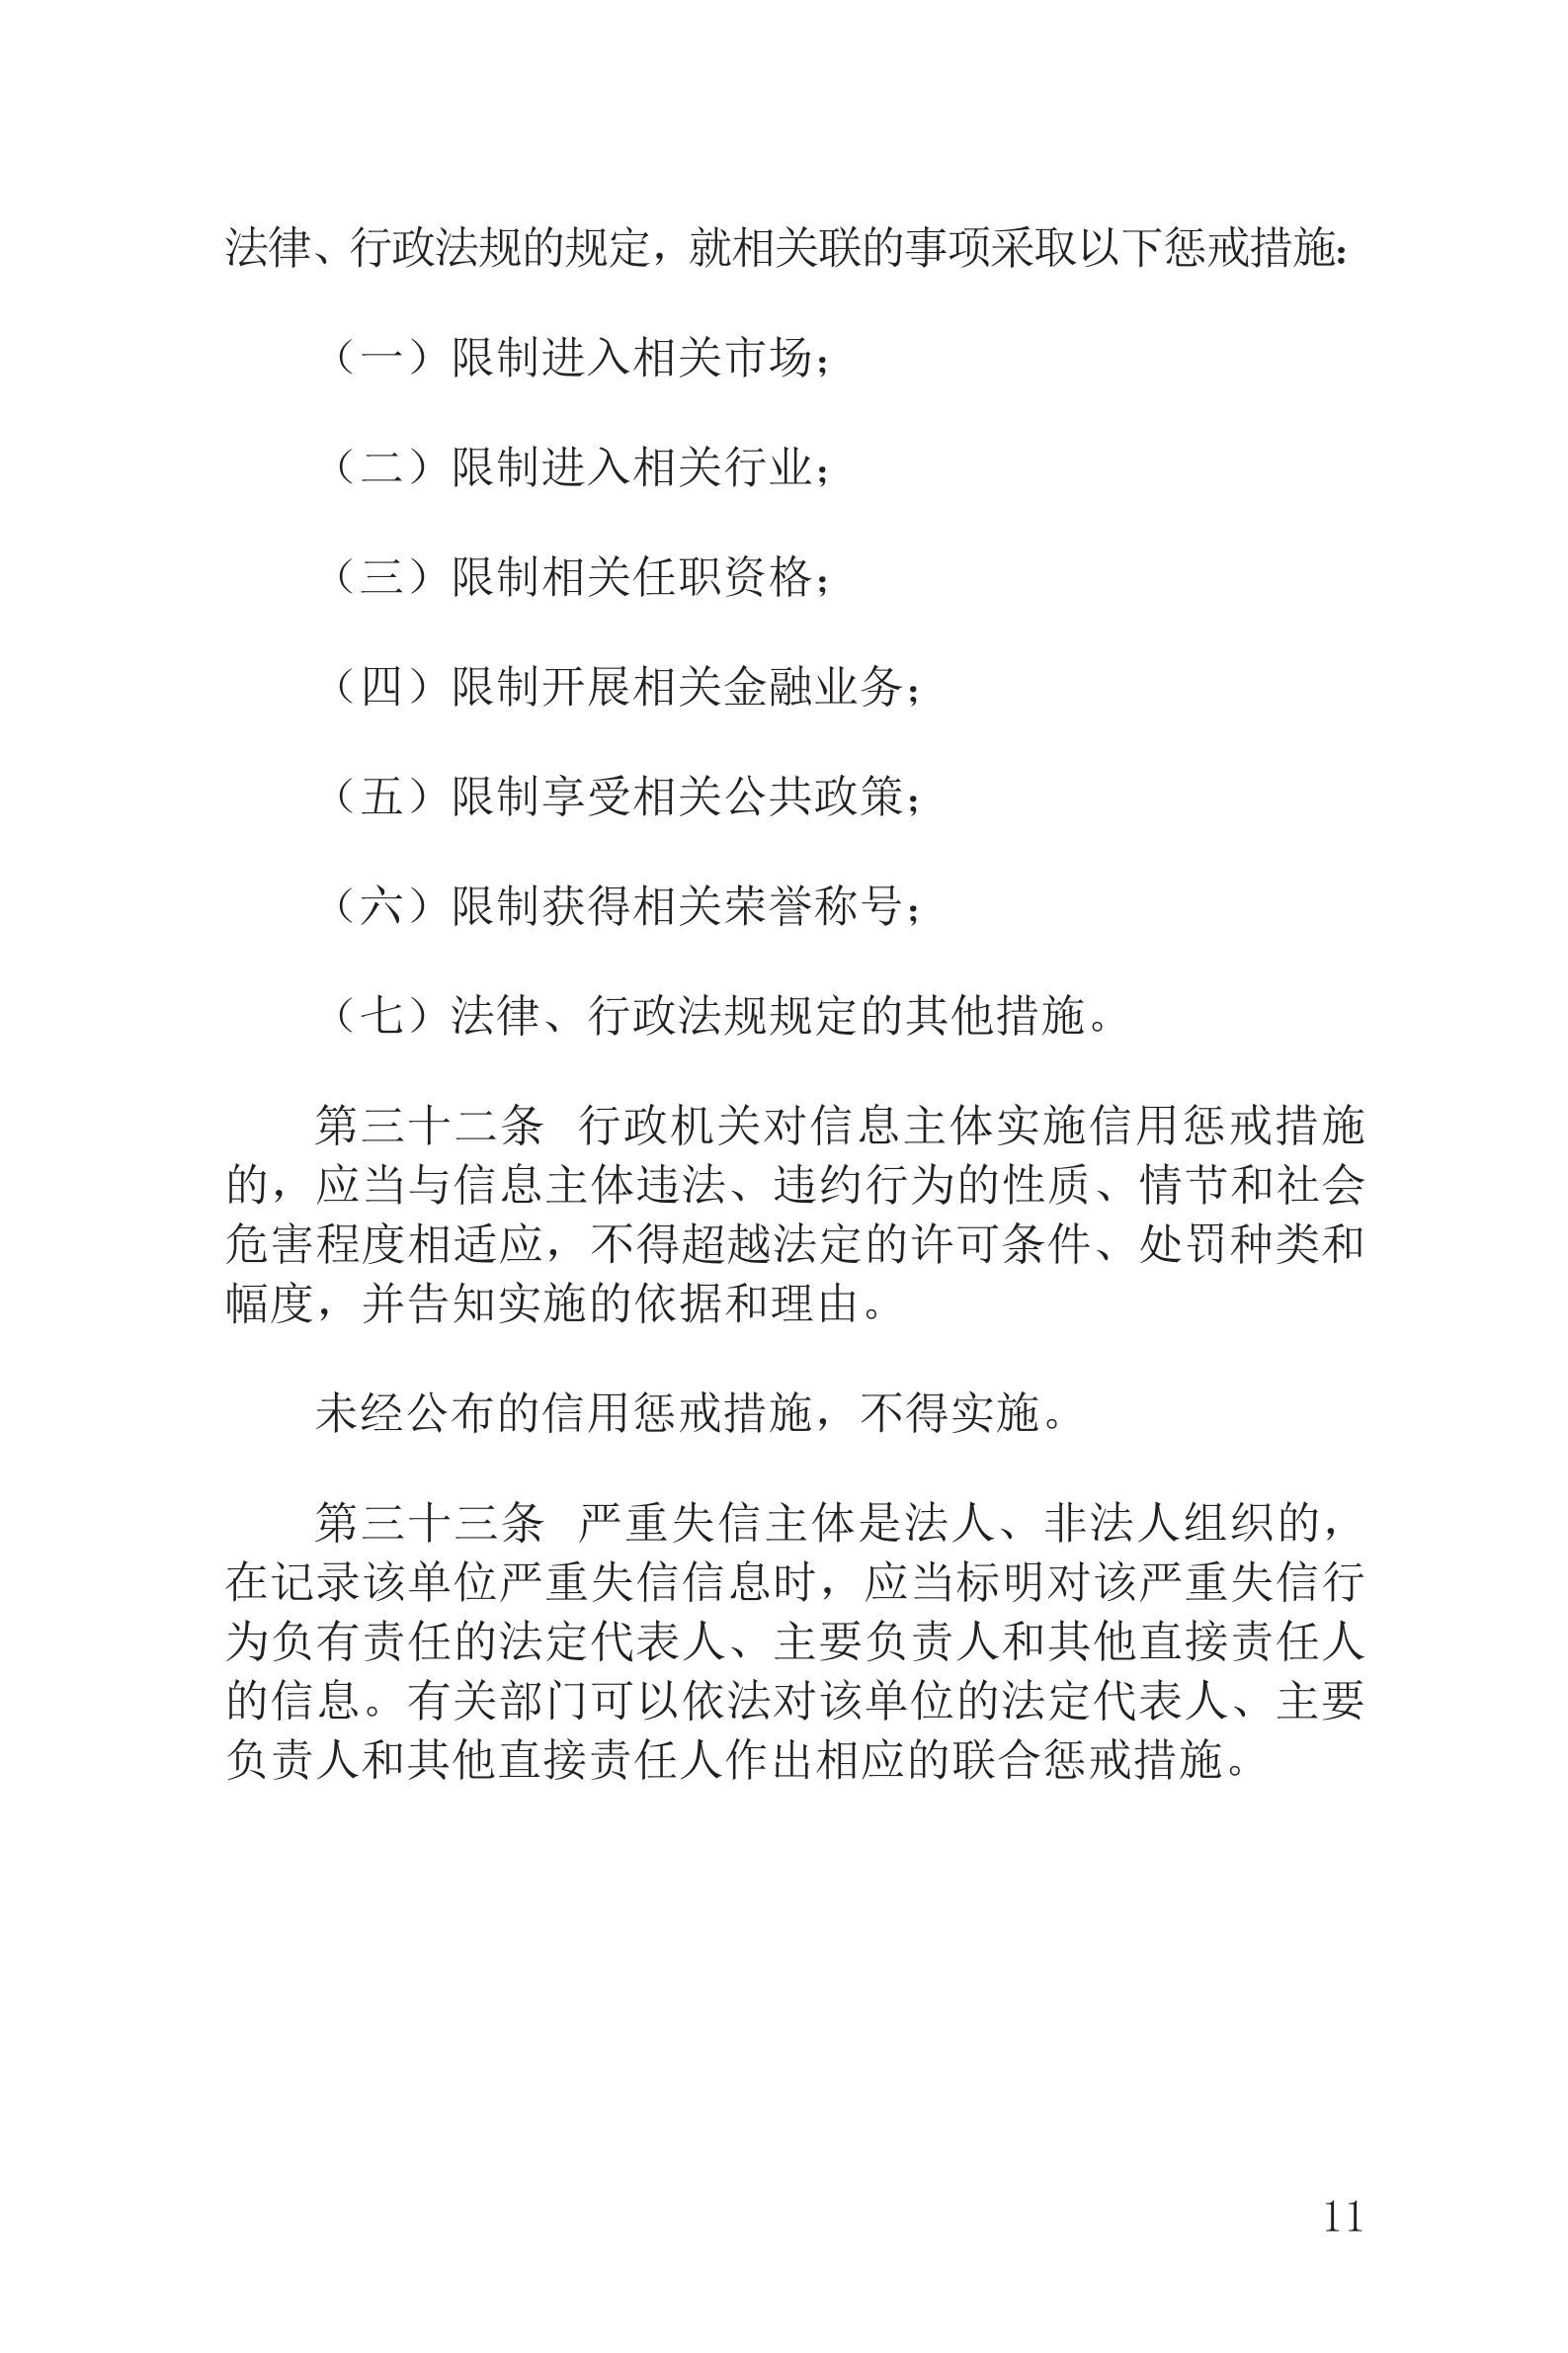 上海市社会信用条例_12.png